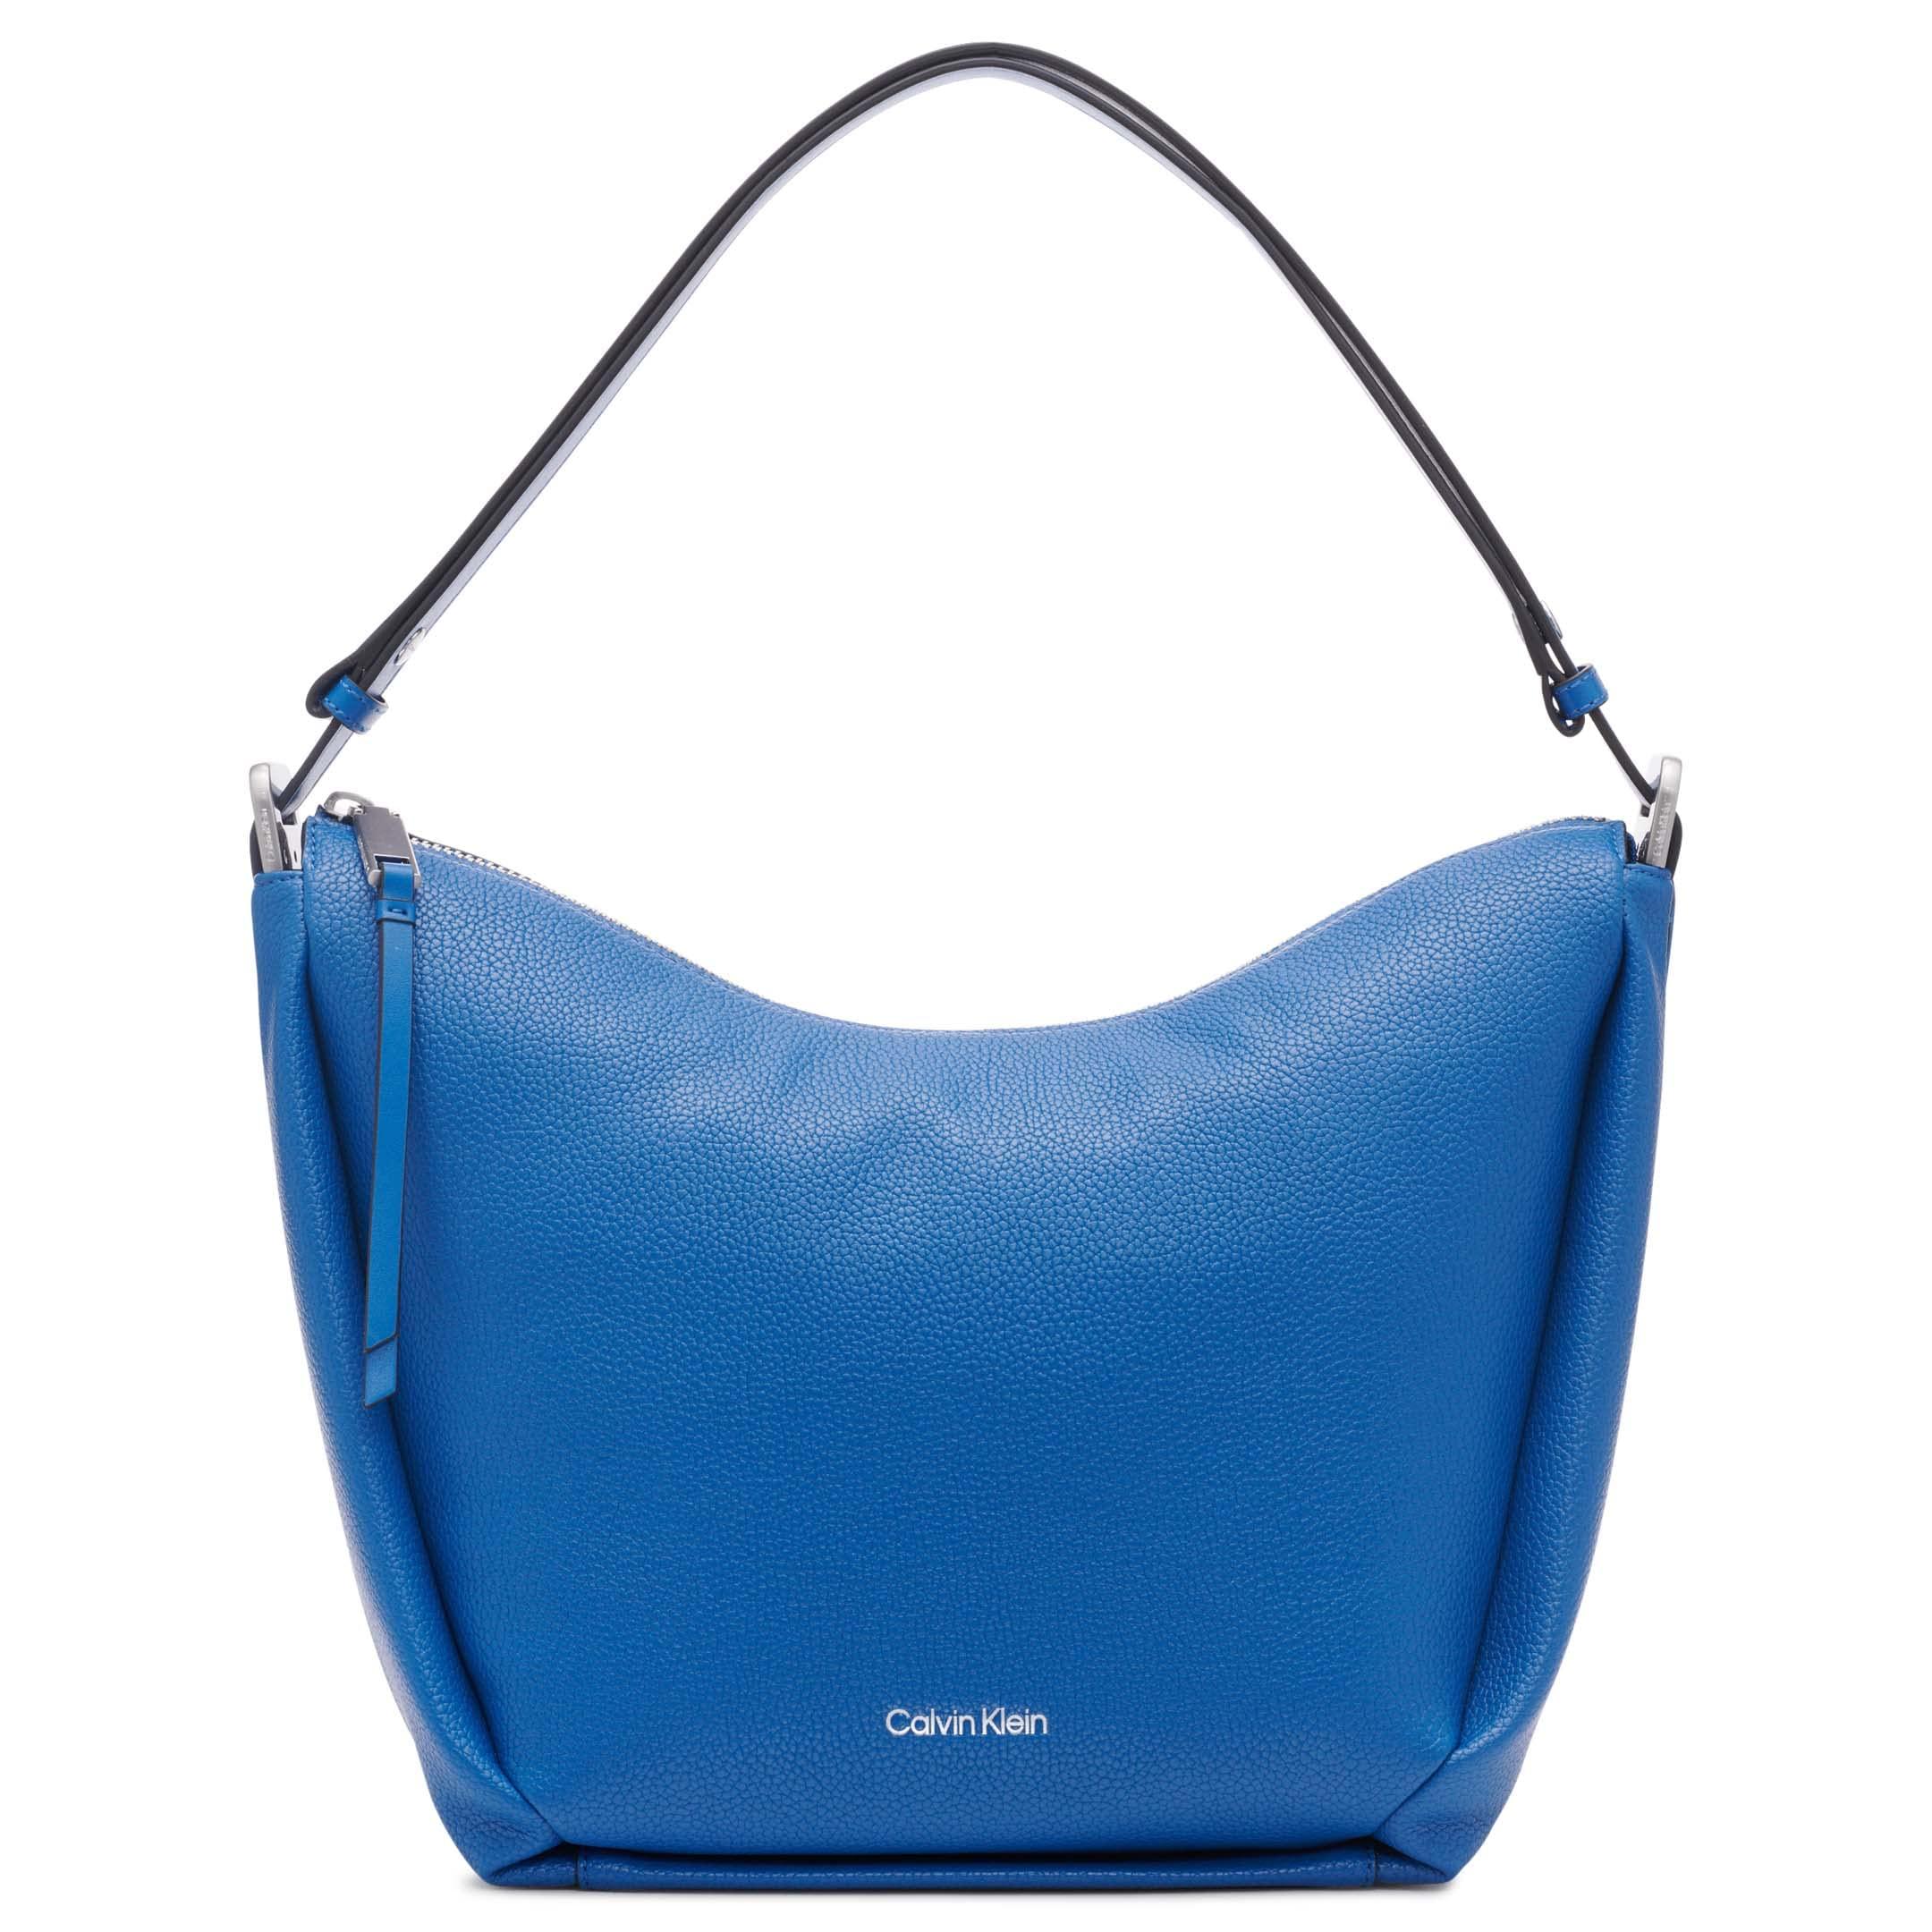 Calvin Klein Prism Top Zip Convertible Hobo Shoulder Bag in Blue | Lyst